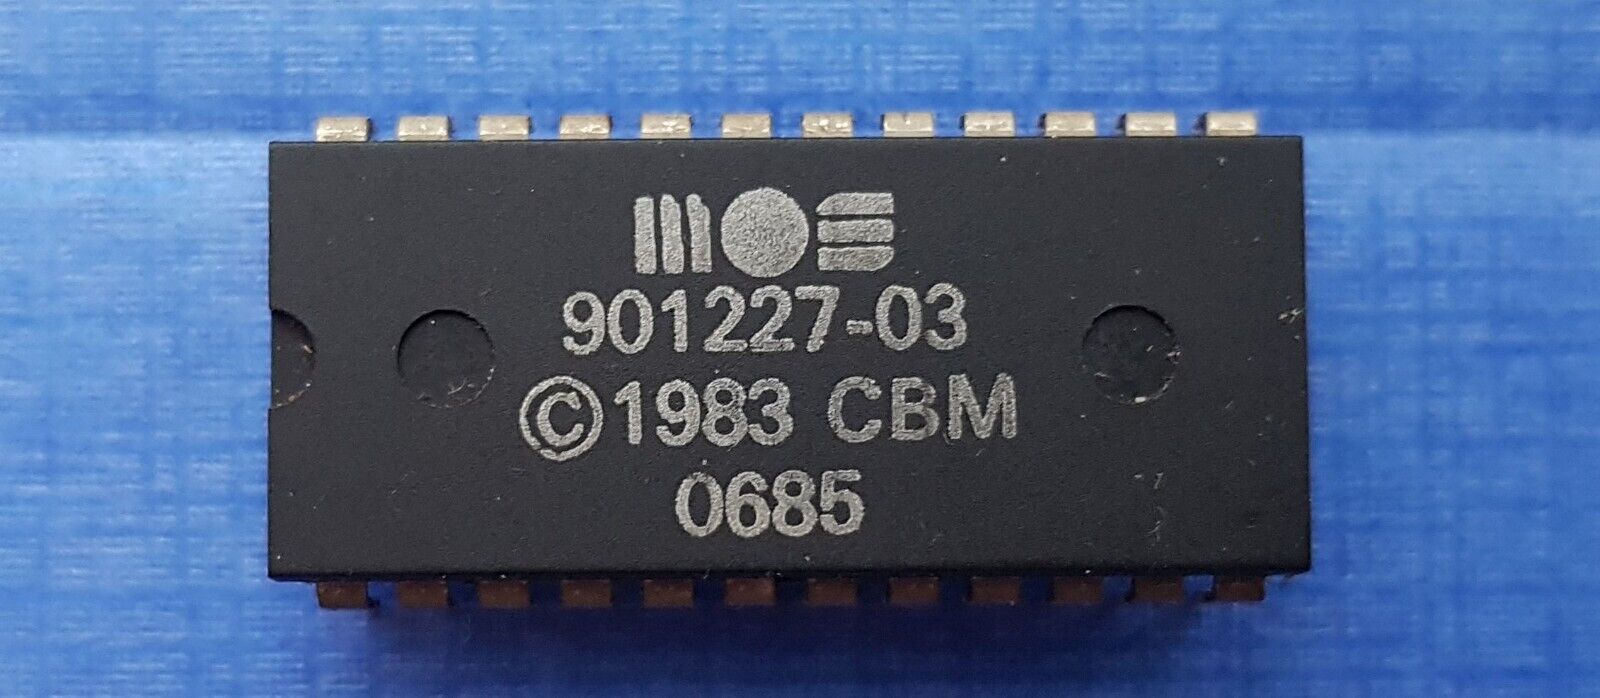 MOS 901227-03 Kernal ROM Chip for Commodore 64, Genuine part, NO DESOLDER